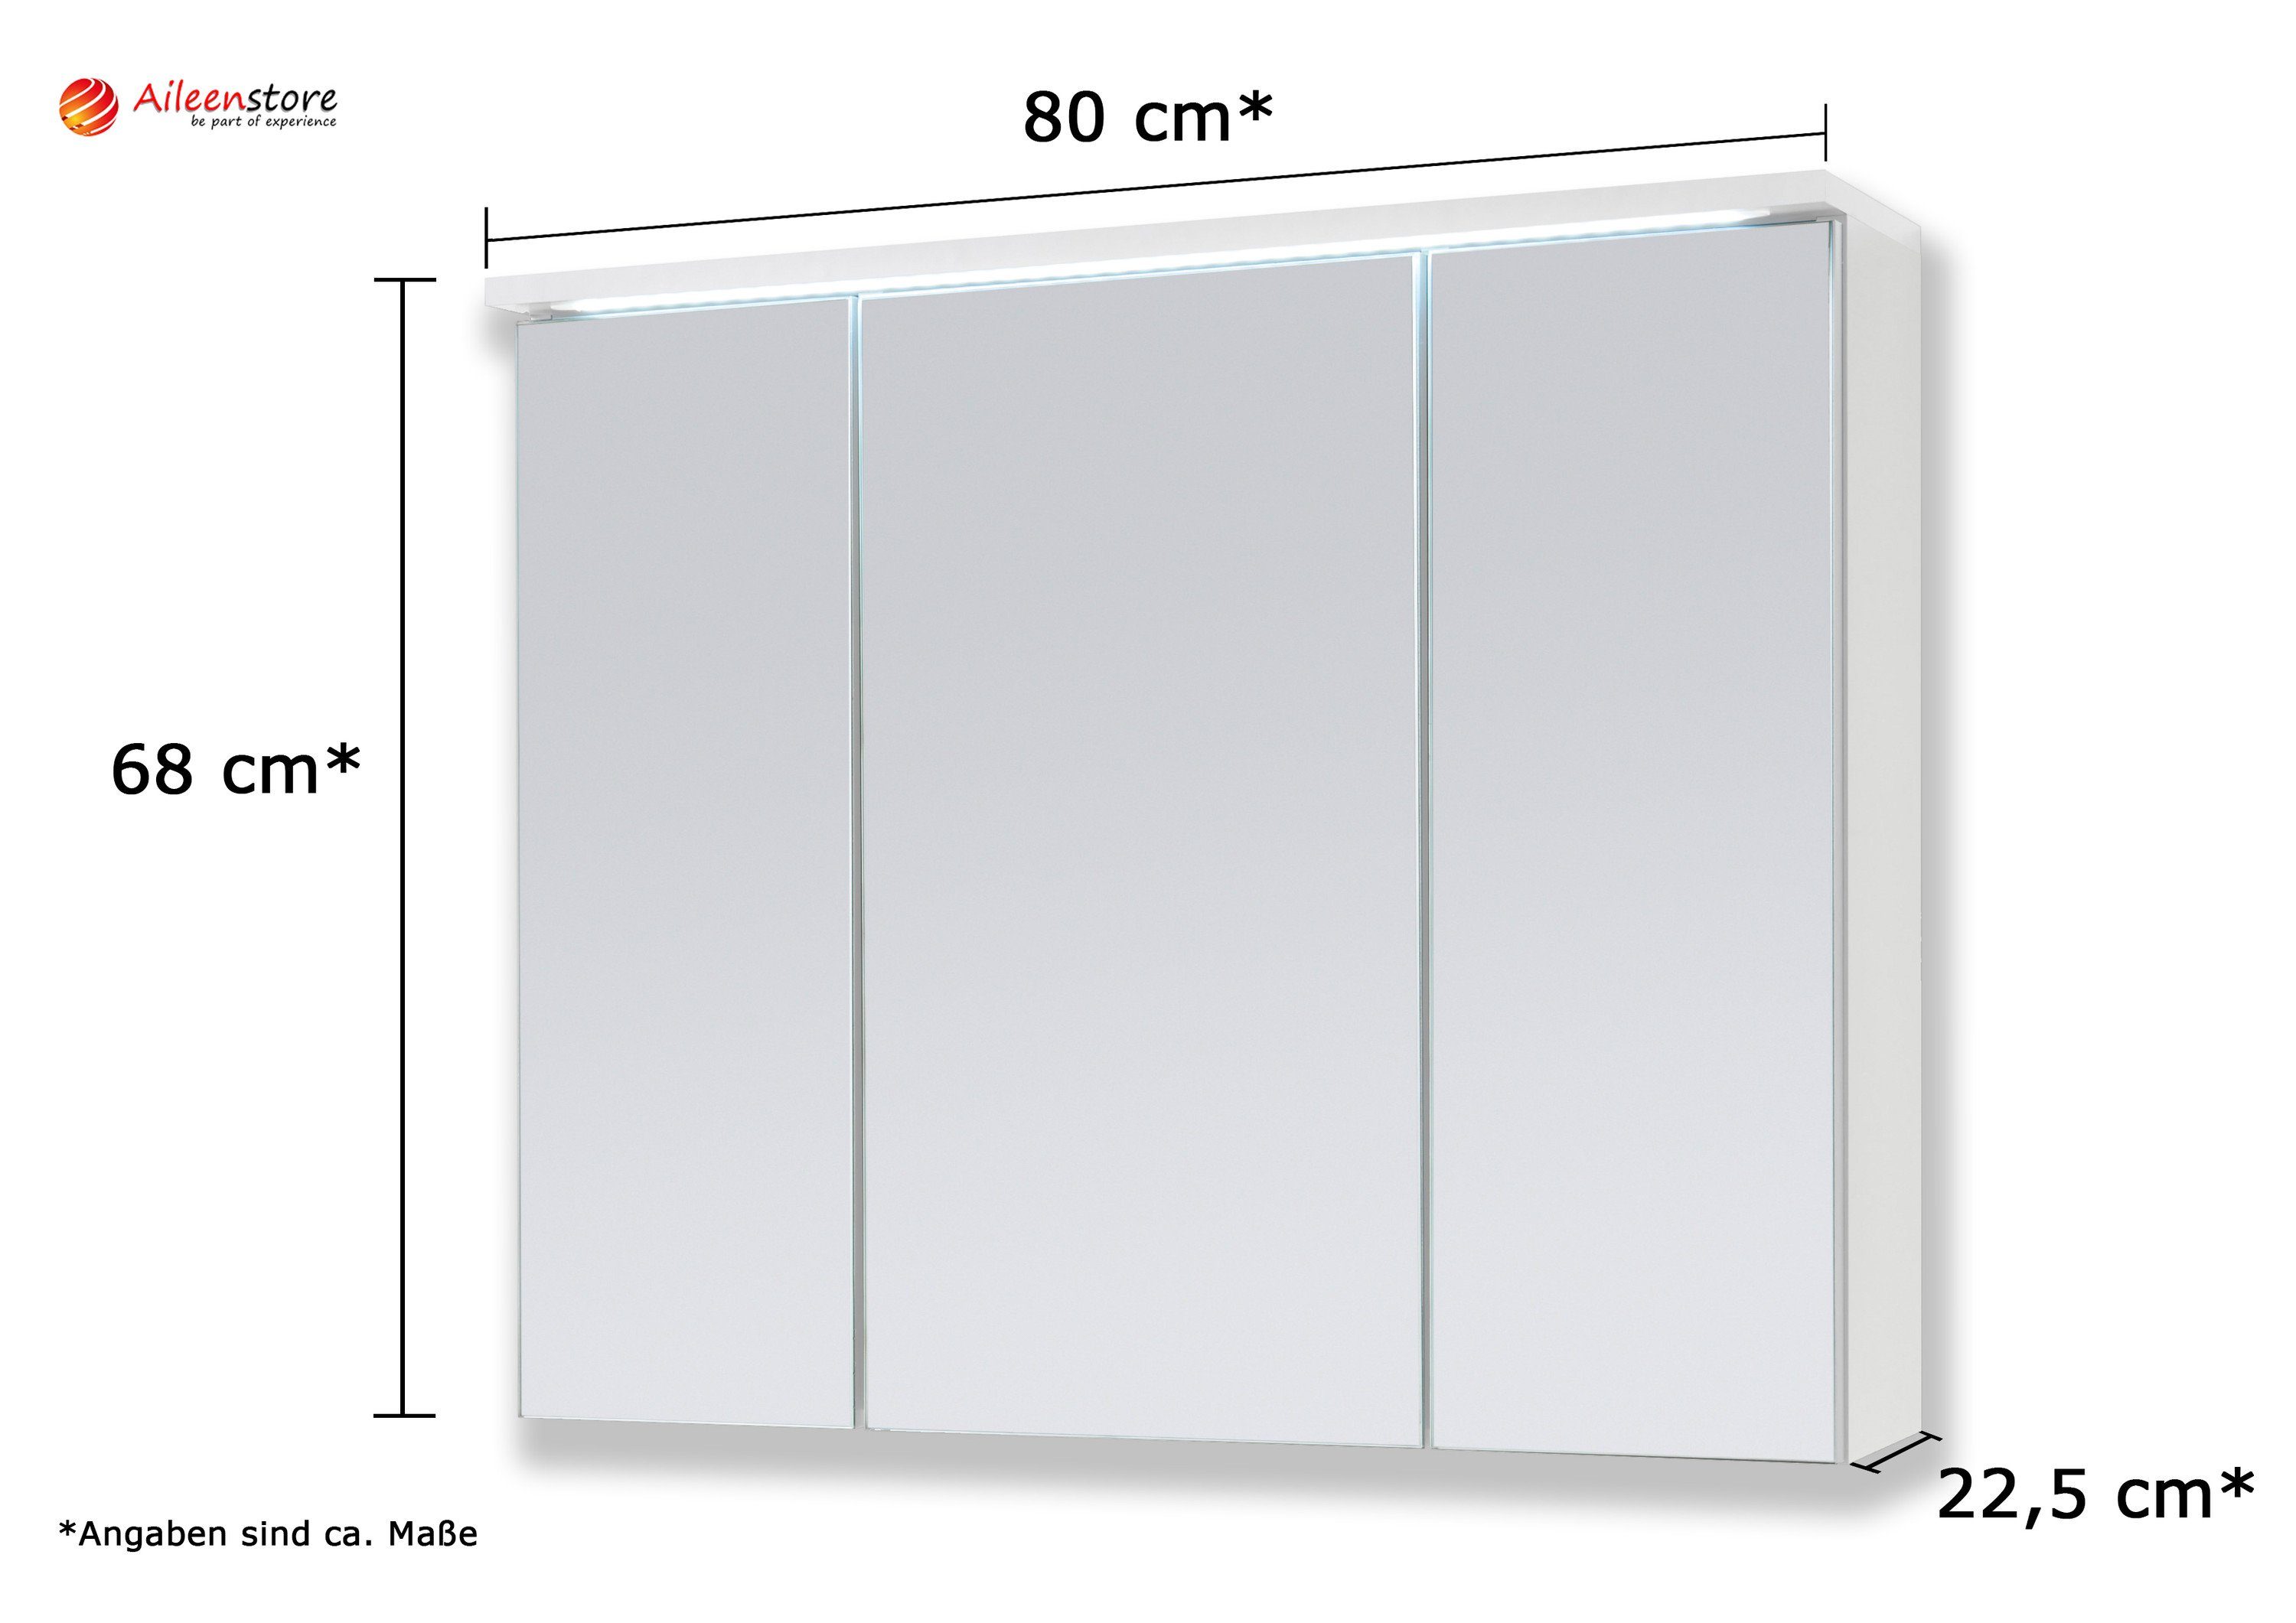 80 LED-Beleuchtung Schalter-/Steckdosenbox, Aileenstore DUO cm, Spiegelschrank Breite